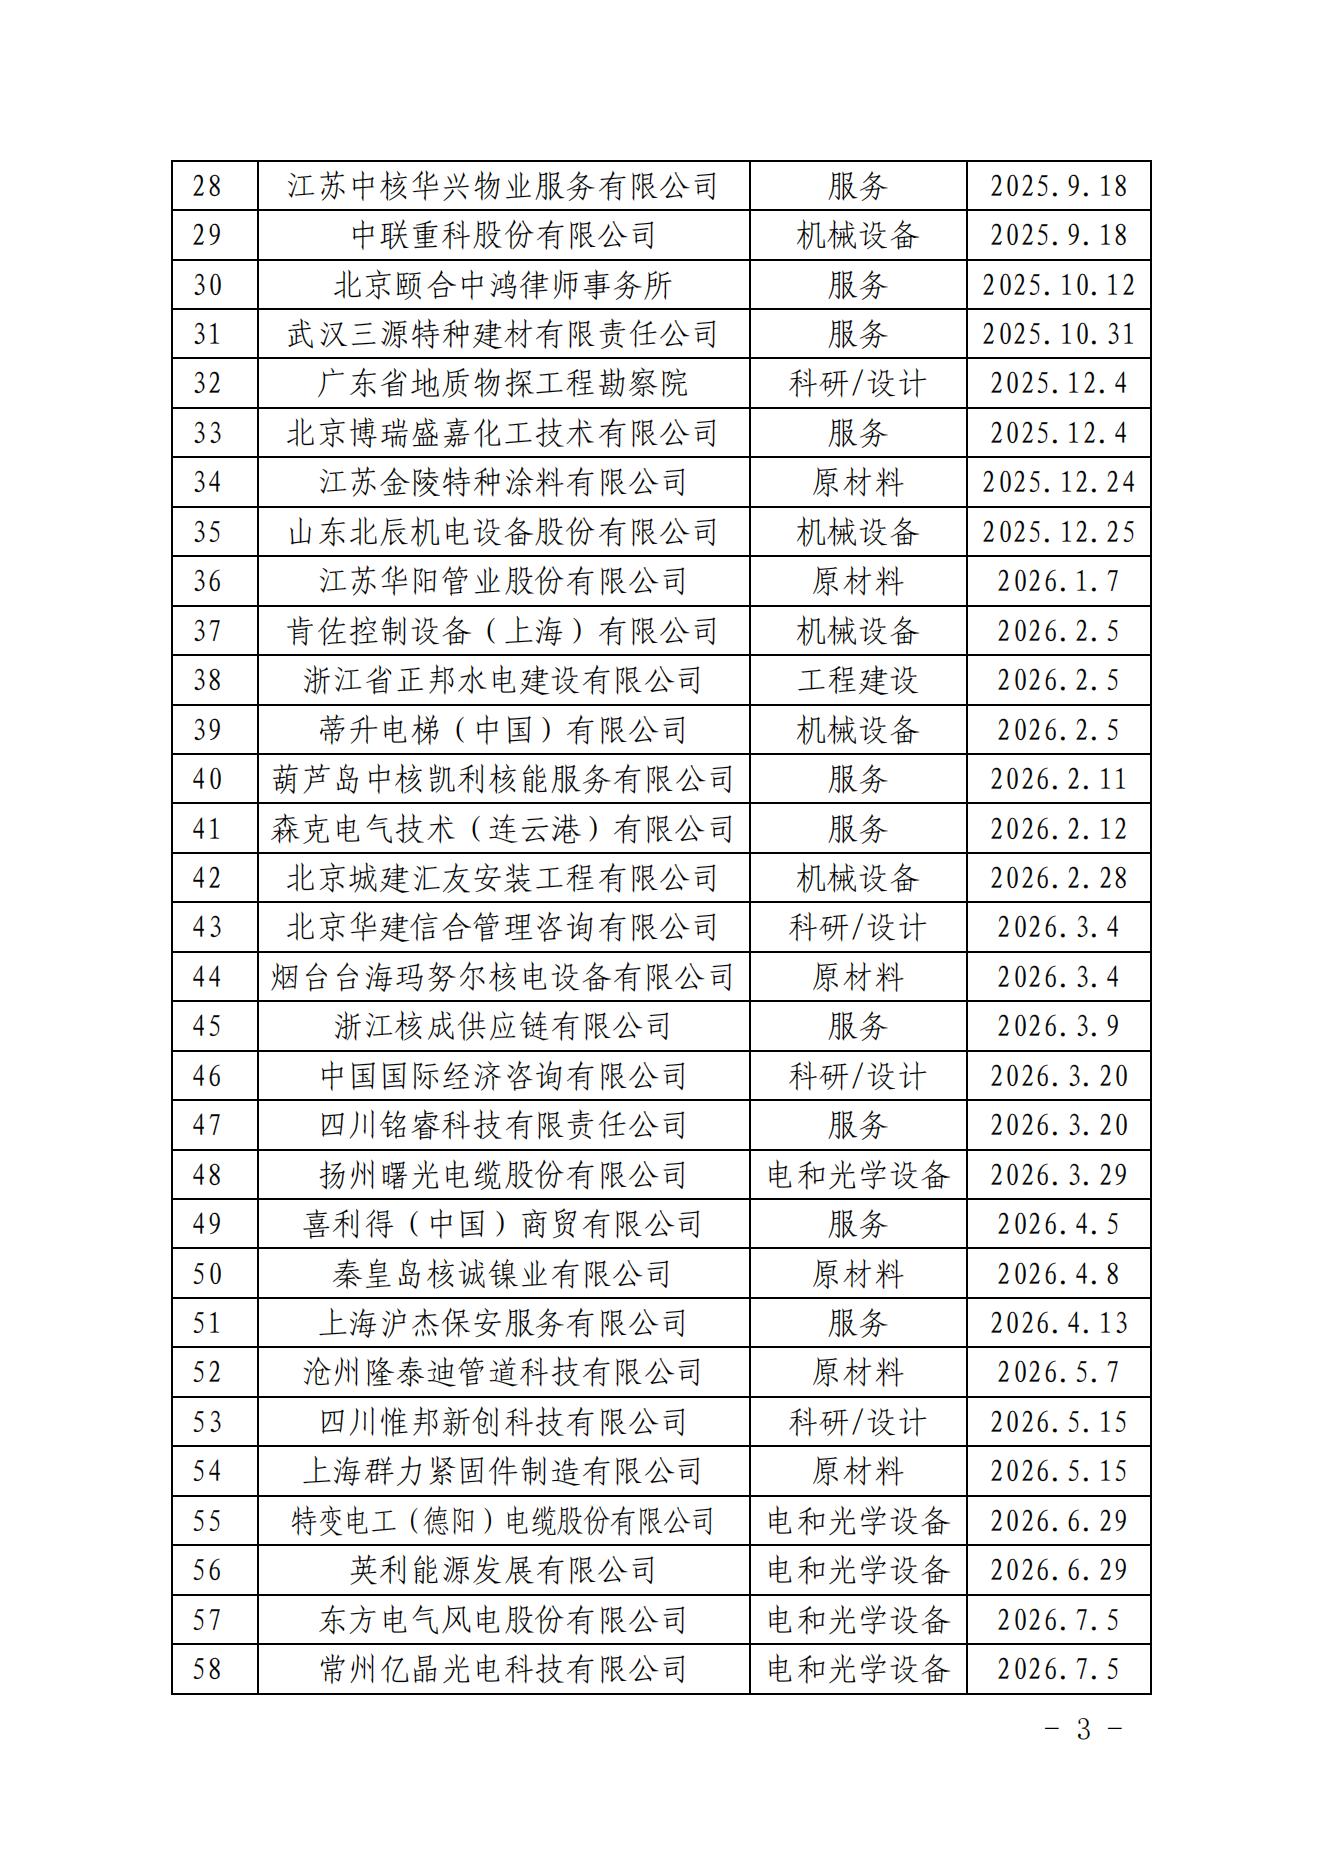 中国核能行业协会关于发布第二十九批核能行业合格供应商名录的公告_02.jpg